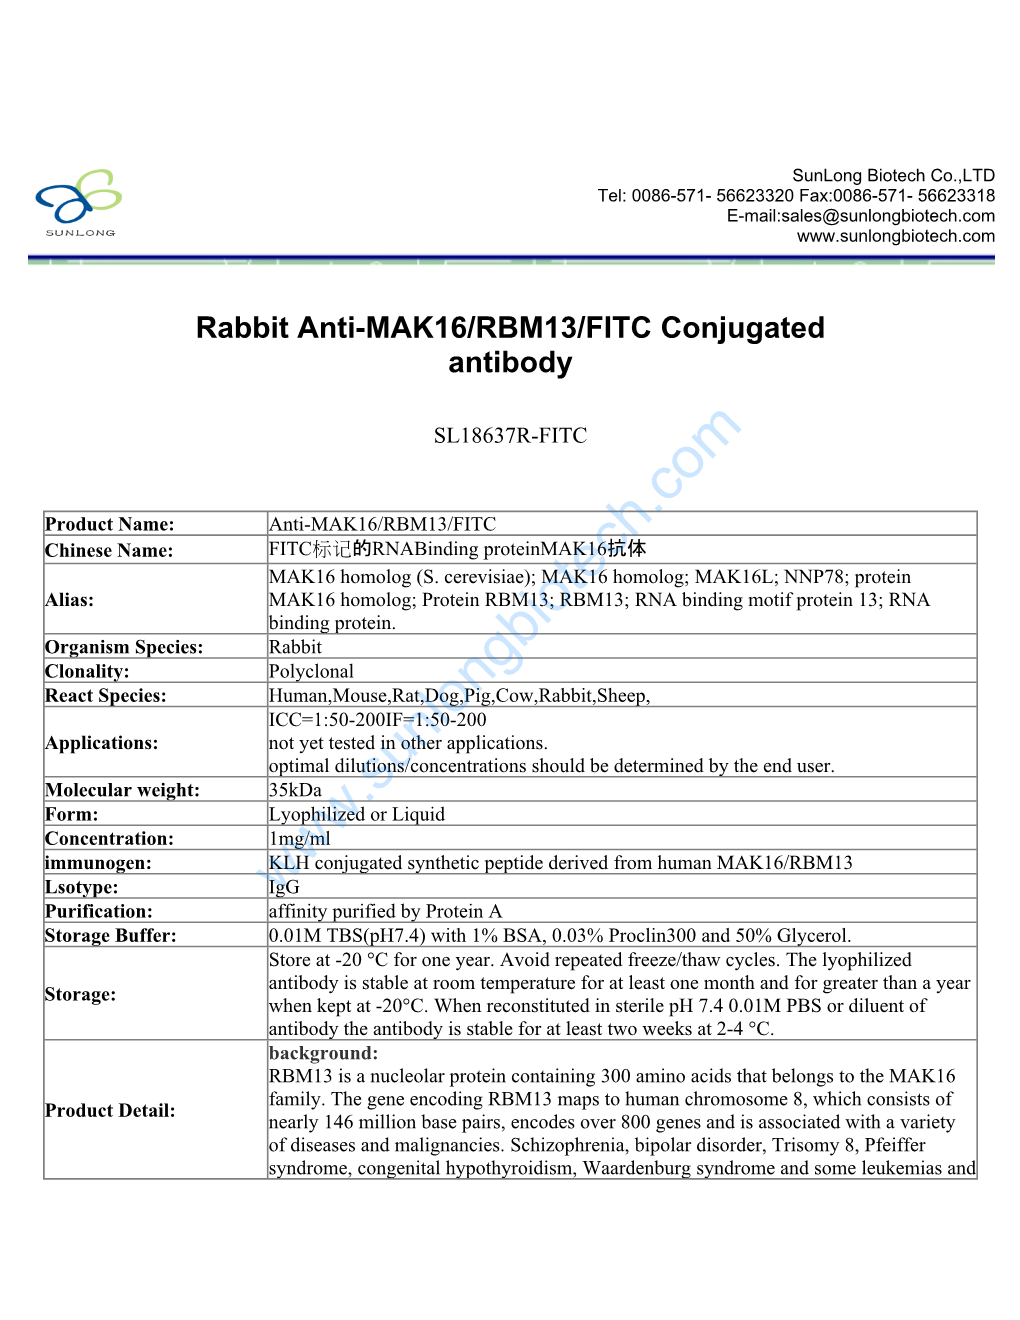 Rabbit Anti-MAK16/RBM13/FITC Conjugated Antibody-SL18637R-FITC